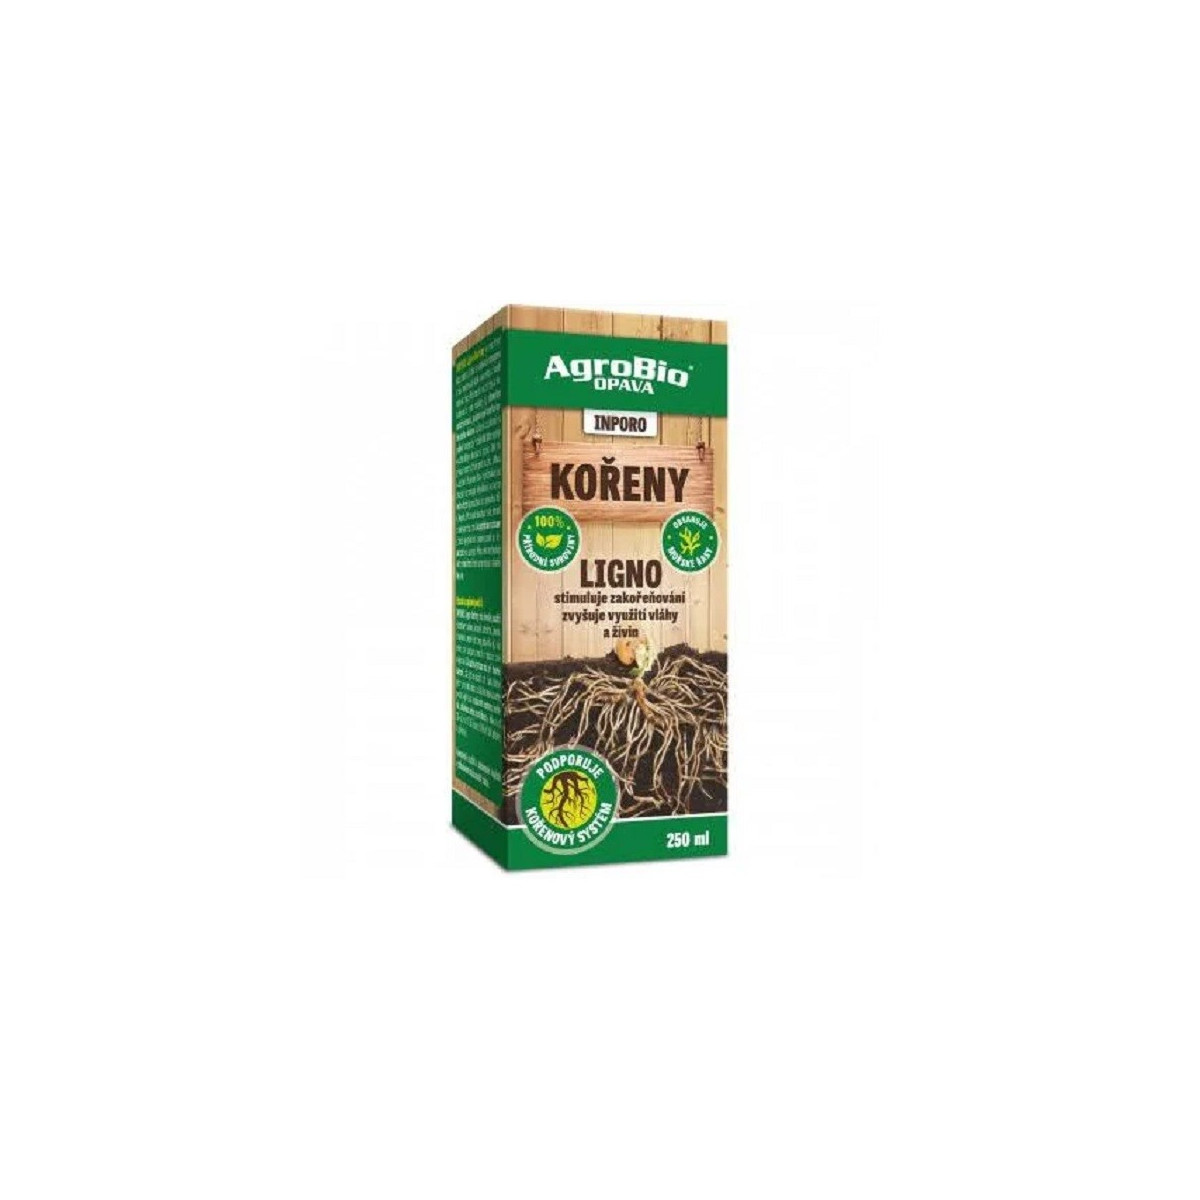 Inporo Ligno Kořeny - AgroBio - 250 ml